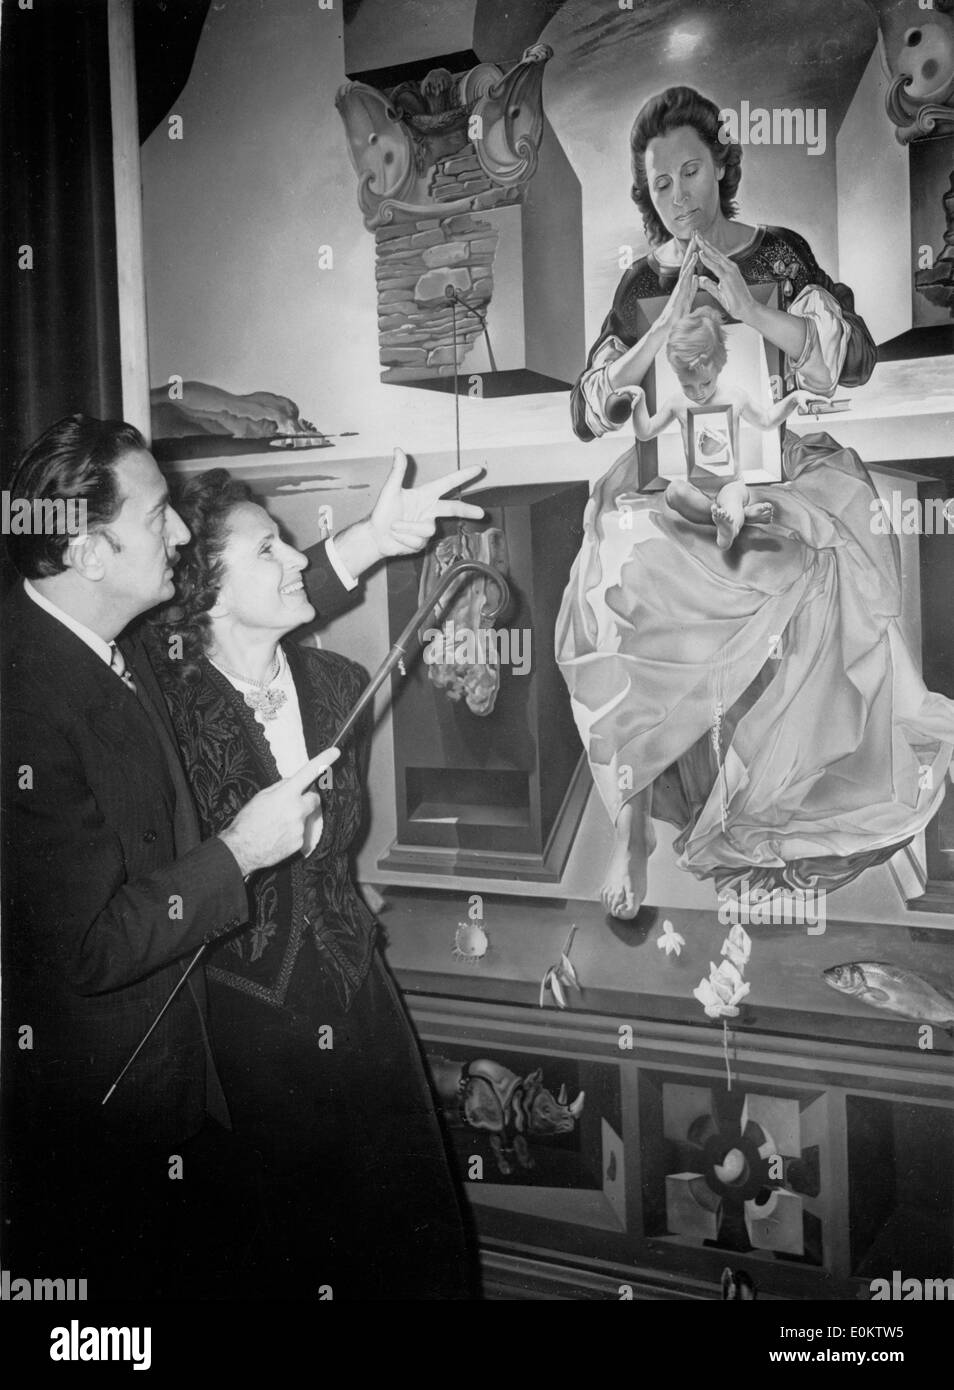 Salvador Dalí con su esposa Gala en frente de una de sus pinturas Foto de stock